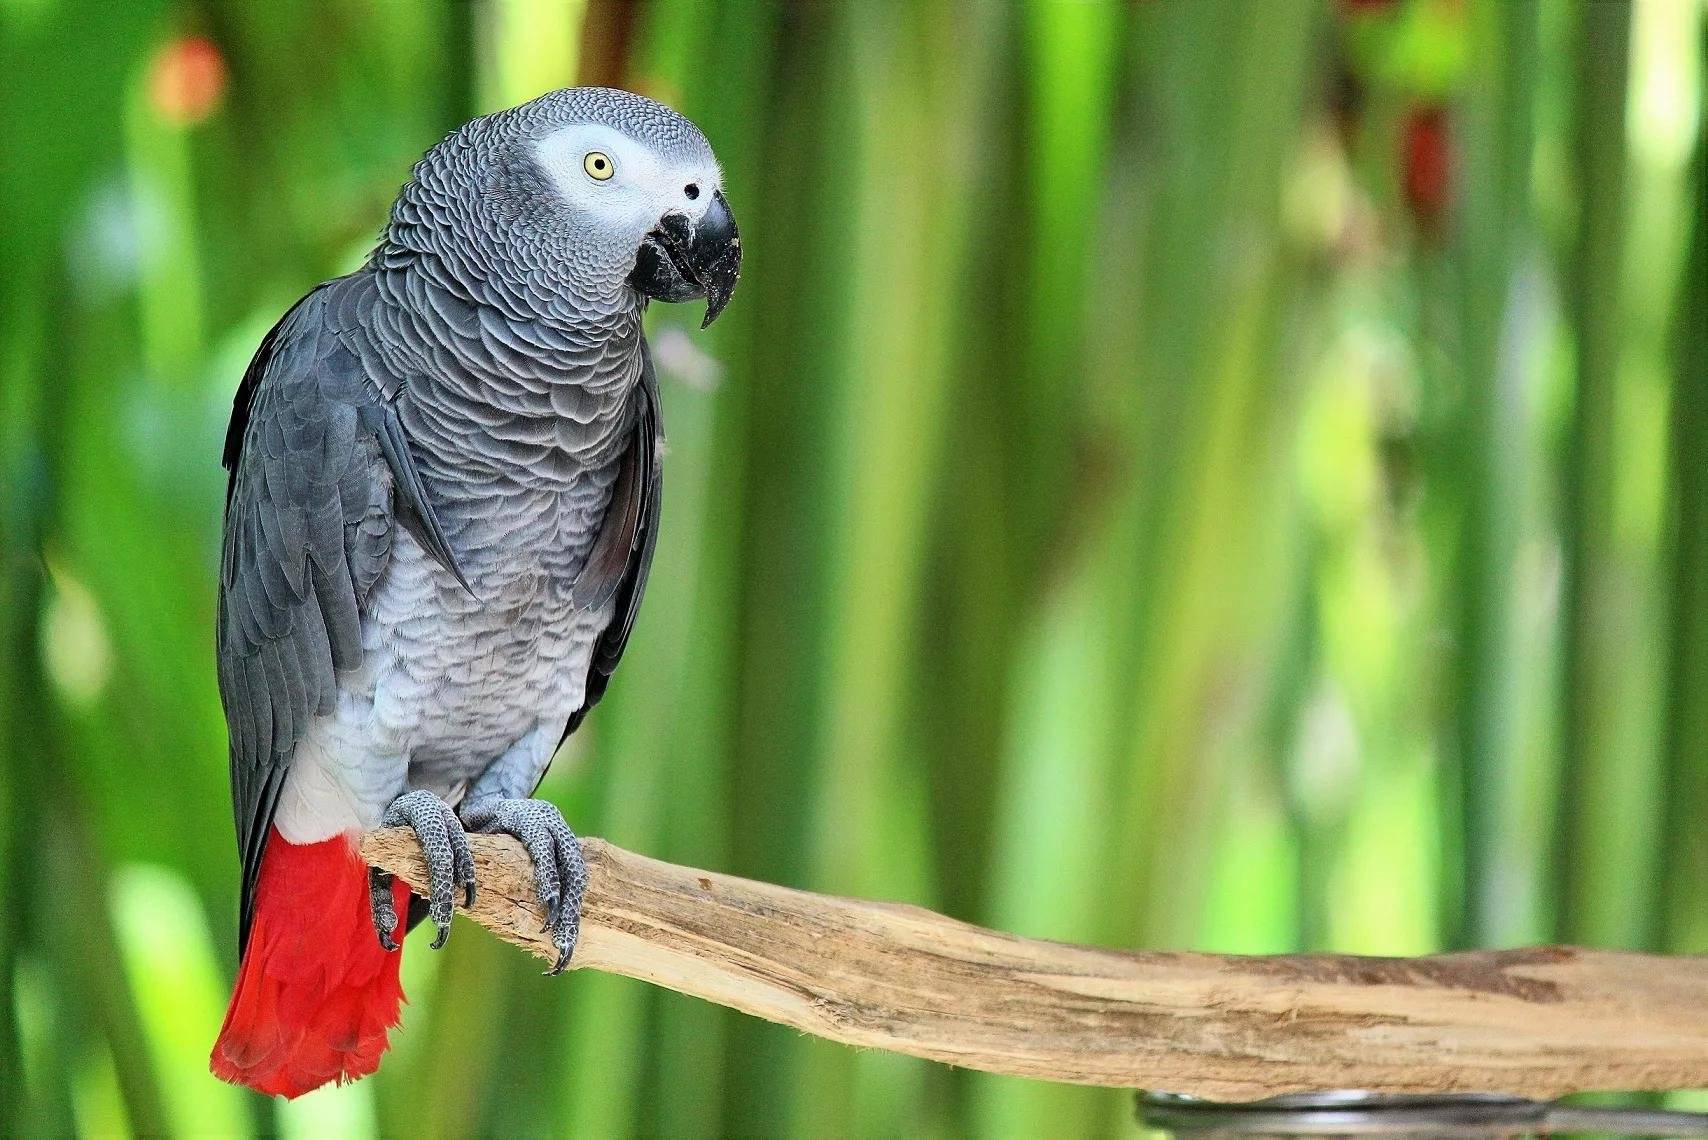 Как выбрать попугая и научить его говорить?